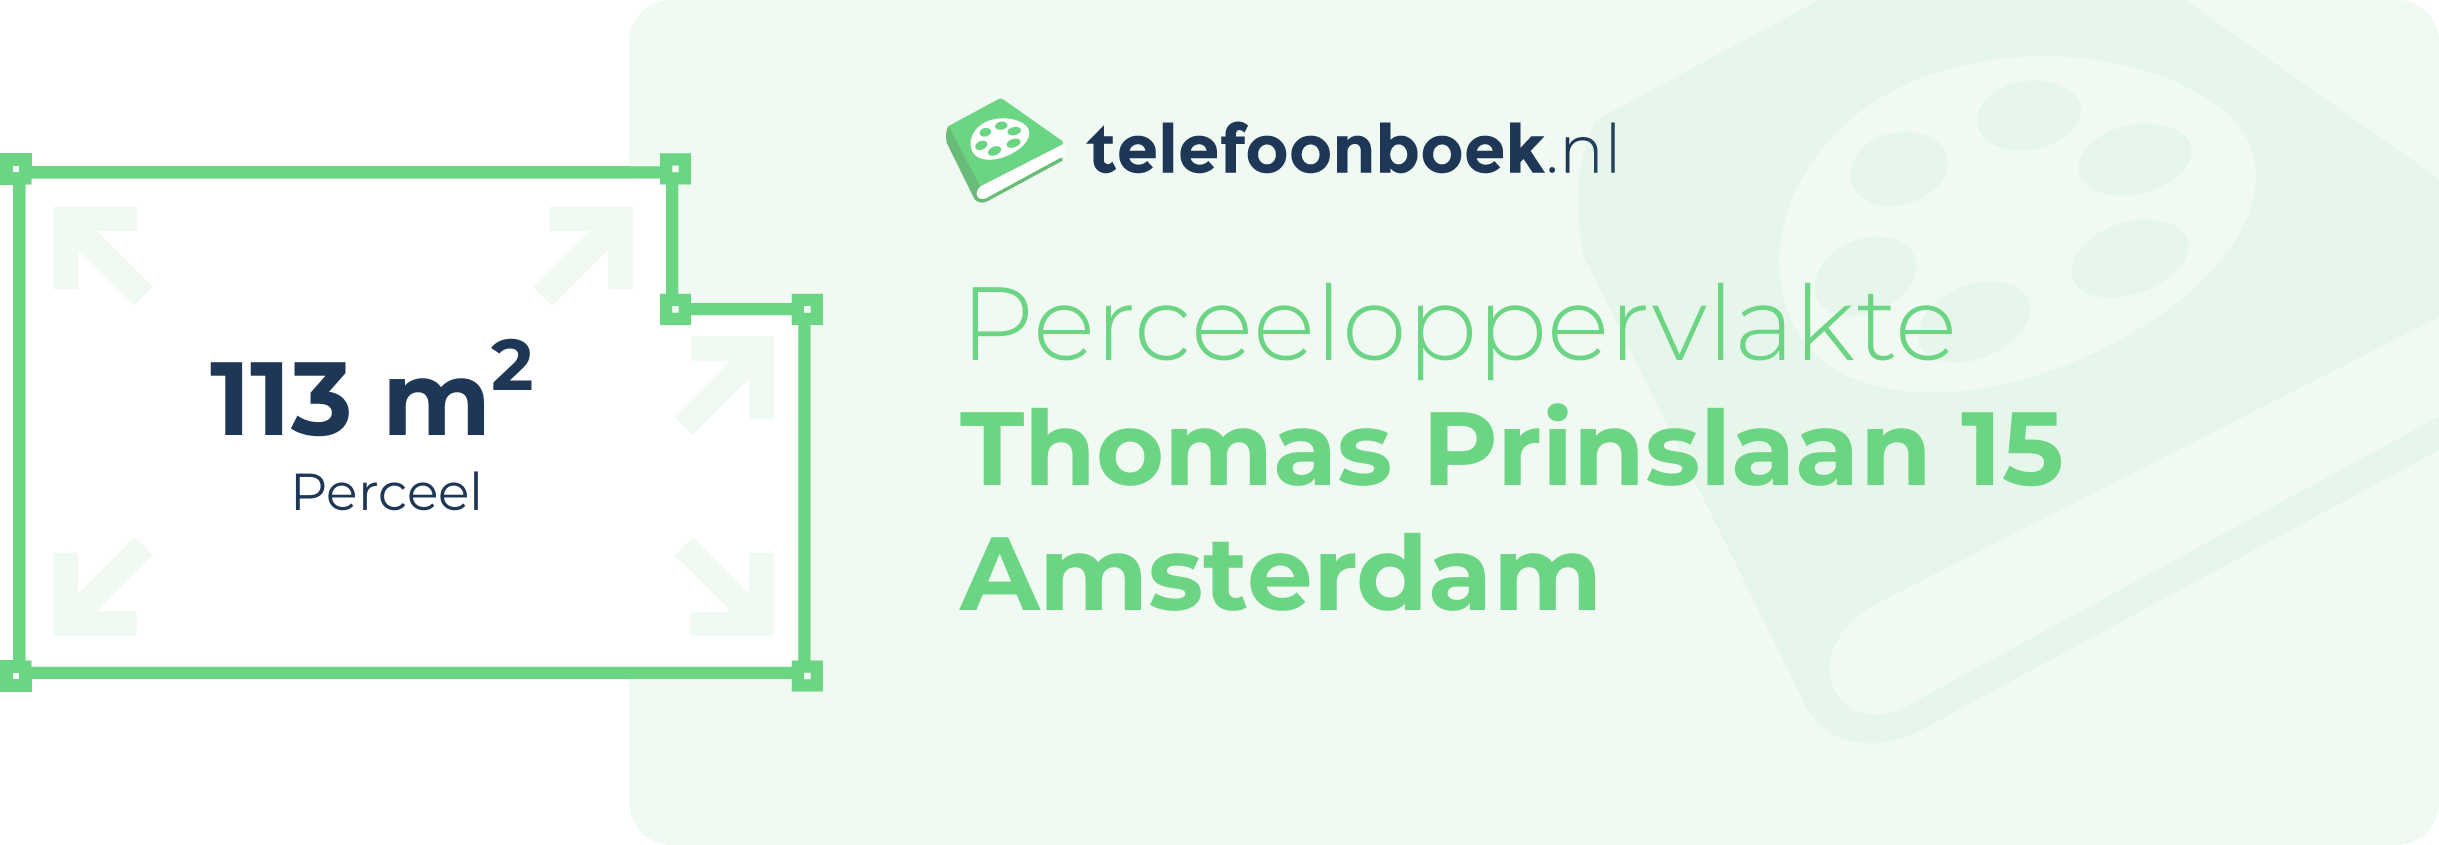 Perceeloppervlakte Thomas Prinslaan 15 Amsterdam